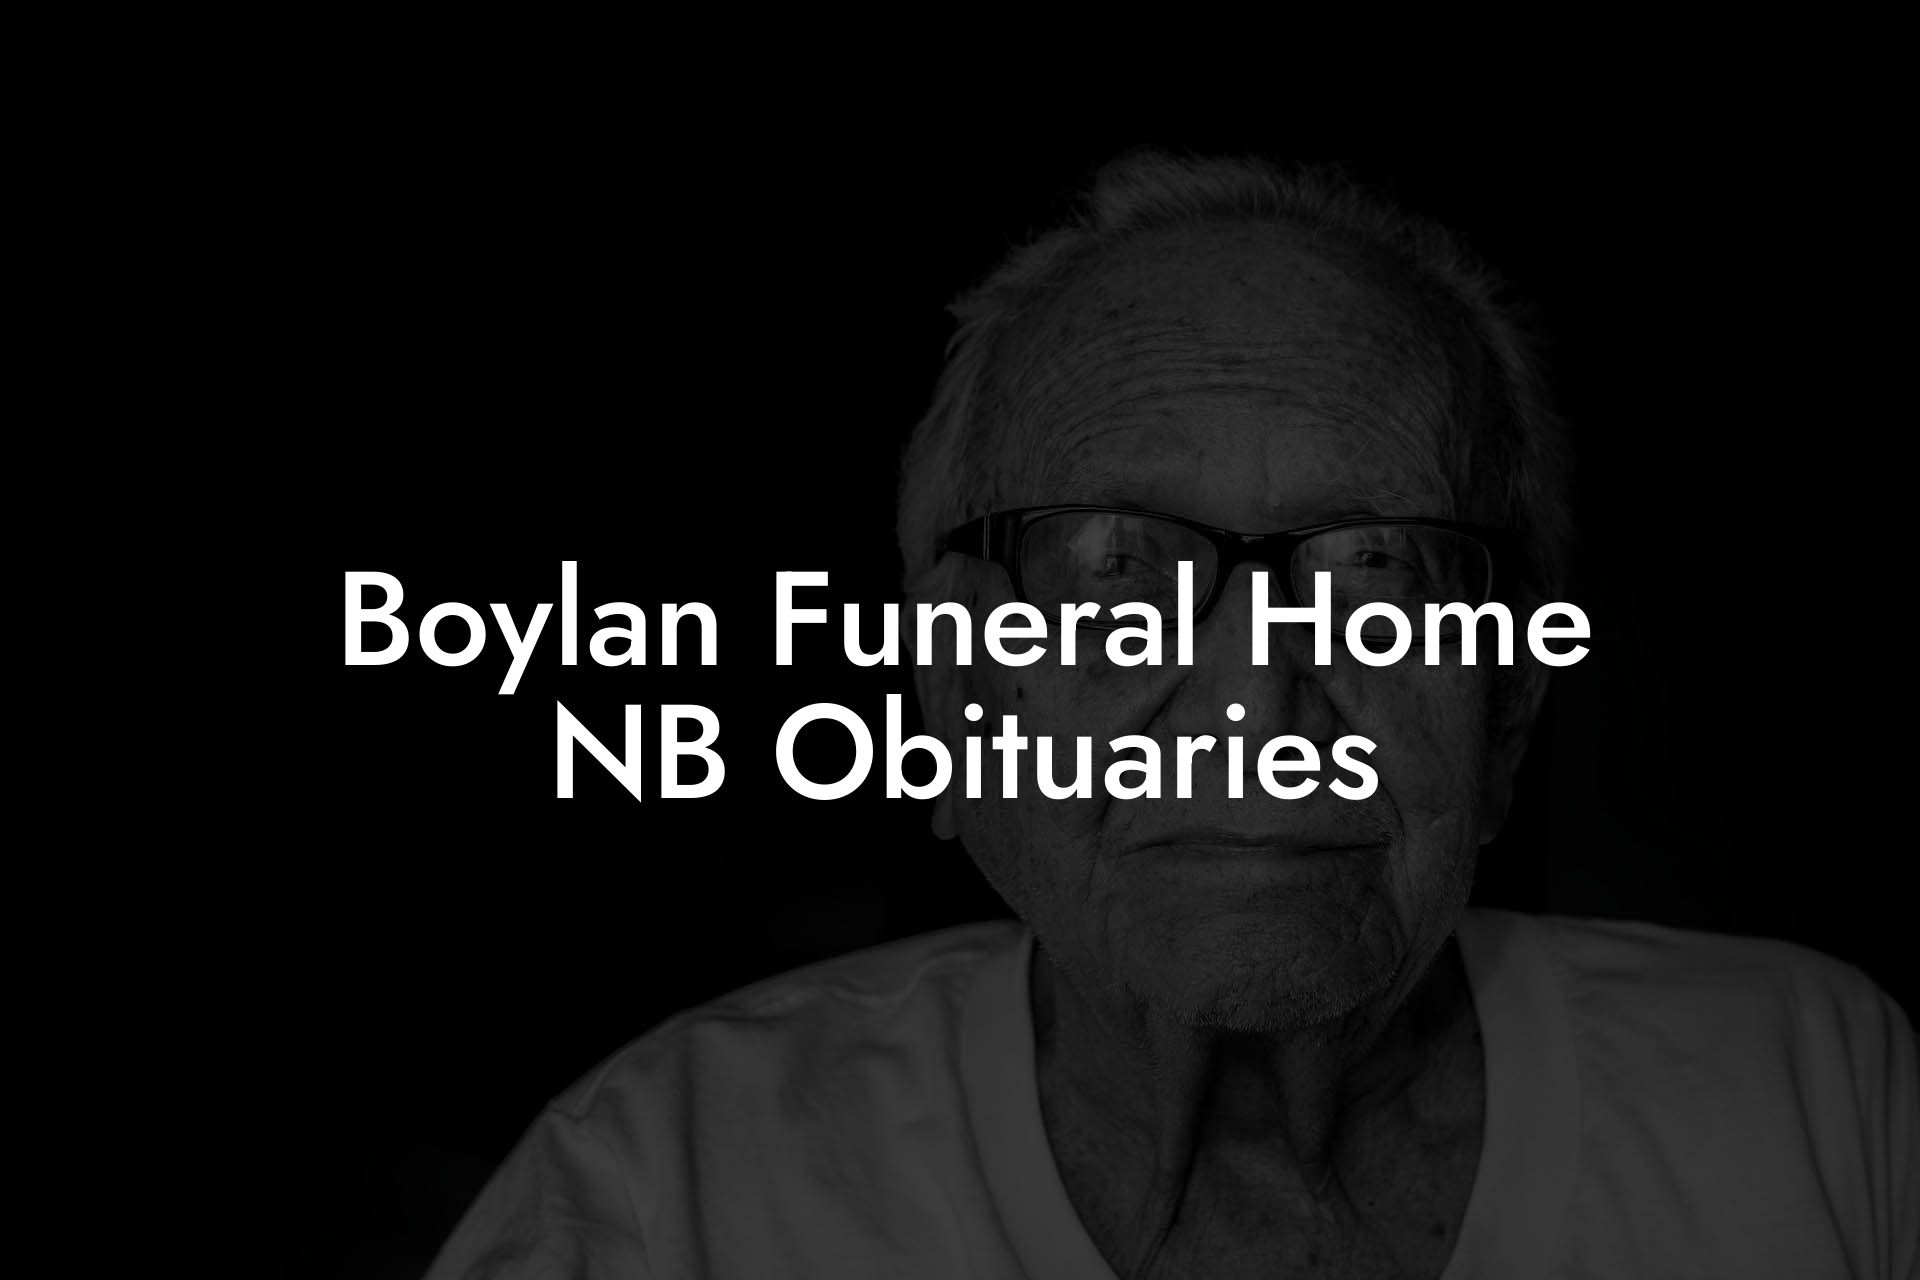 Boylan Funeral Home NB Obituaries